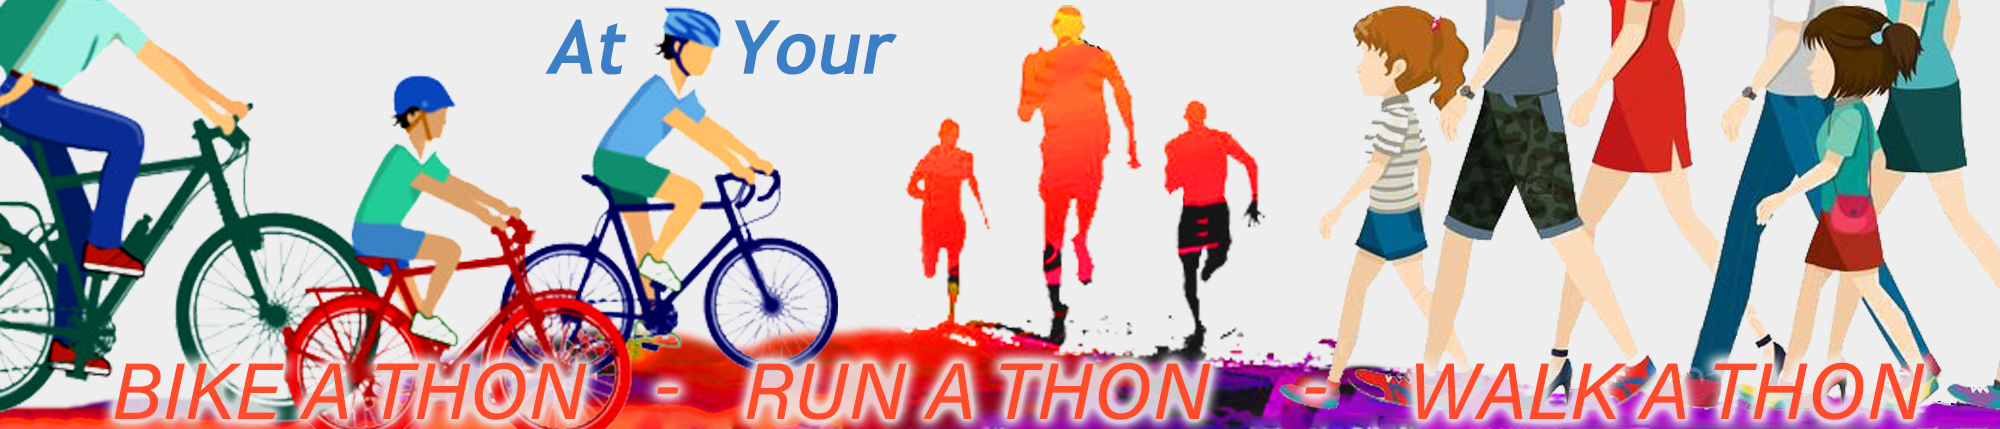 Walk a Thon Run a Thon Run Races Contest Insurance